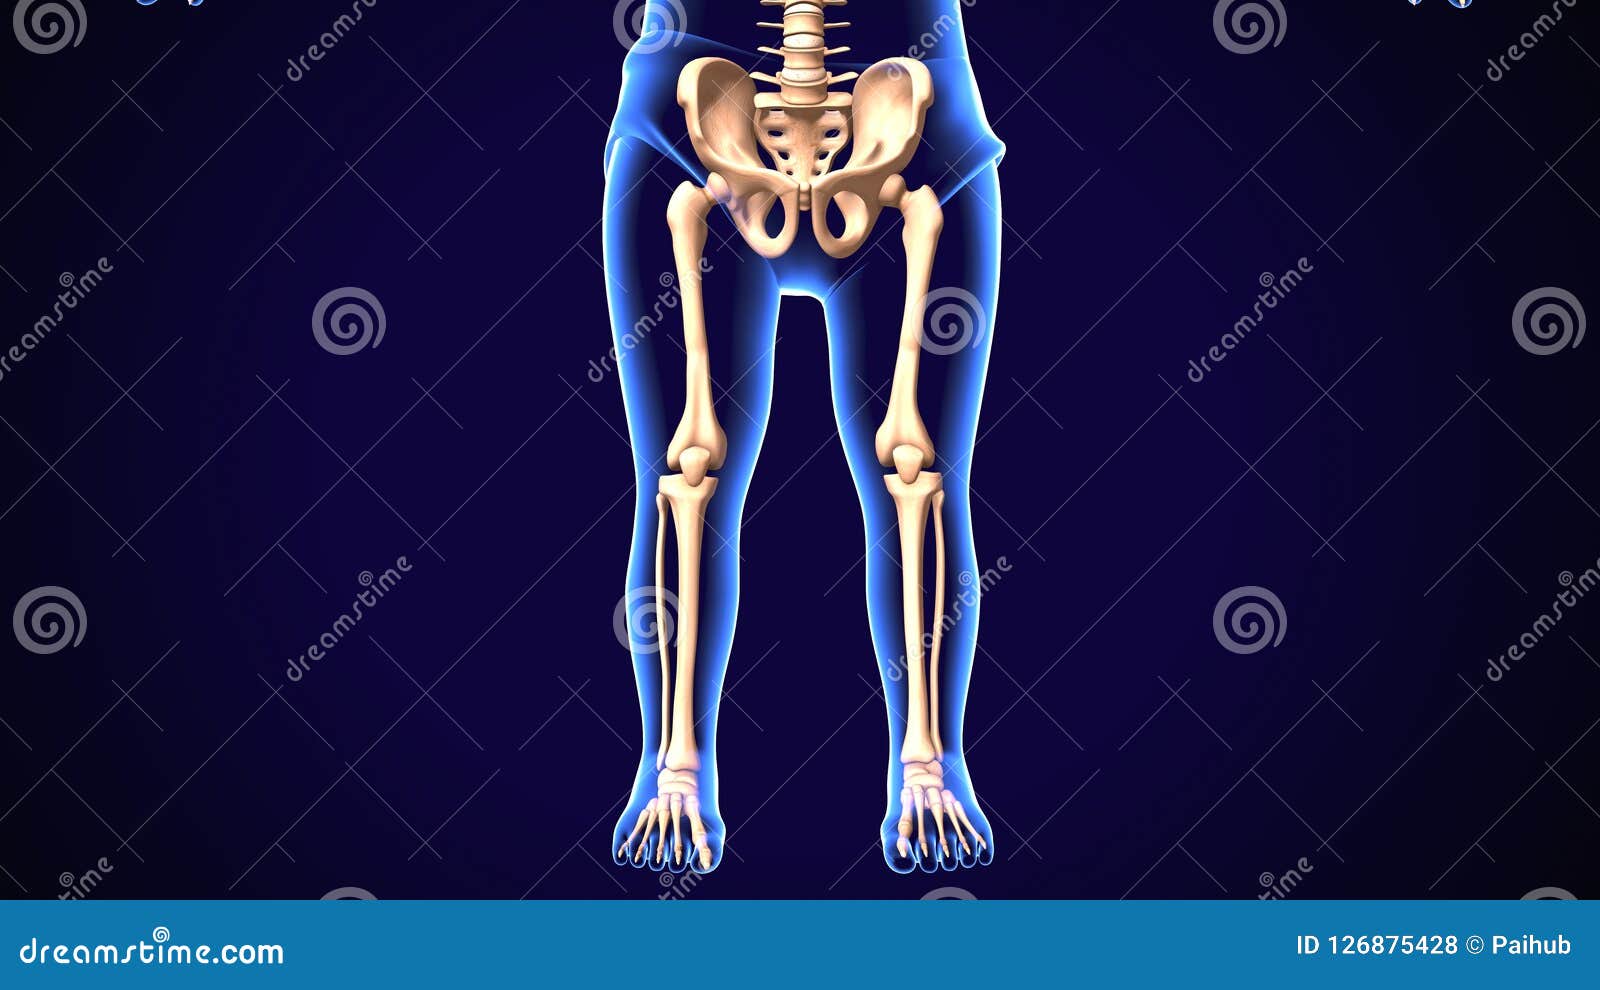 3d Render Of Human Skeleton Lower Leg Pain Anatomy Stock Illustration Illustration Of Region Extending 126875428